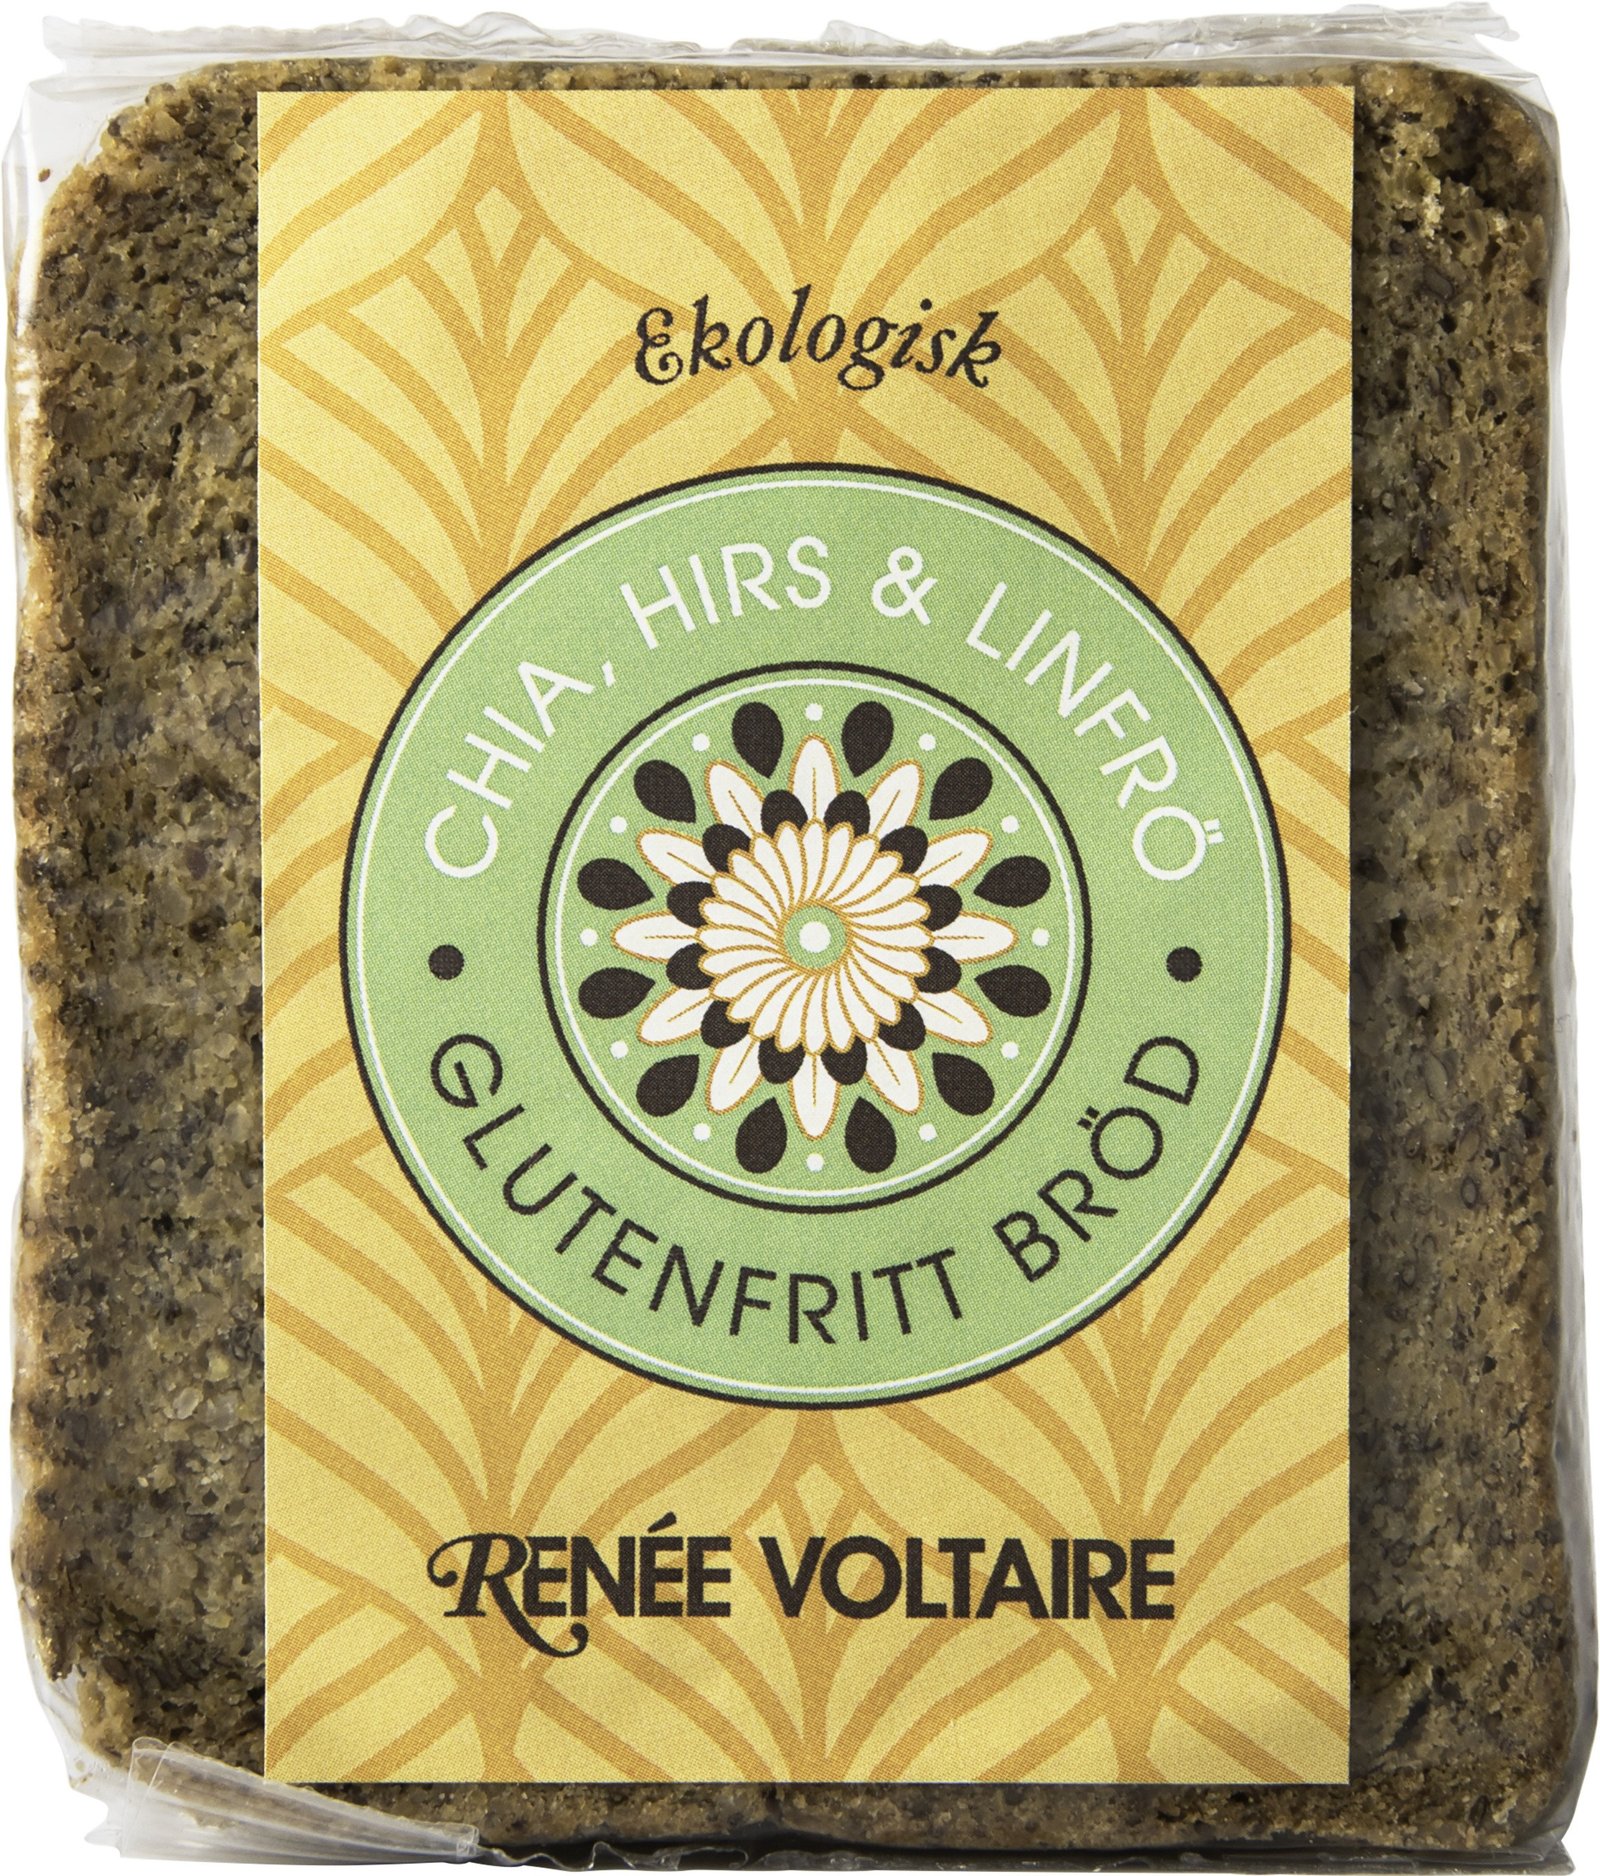 Renée Voltaire Ekologiskt Glutenfritt Bröd Chia, Hirs & Linfrö 375 g